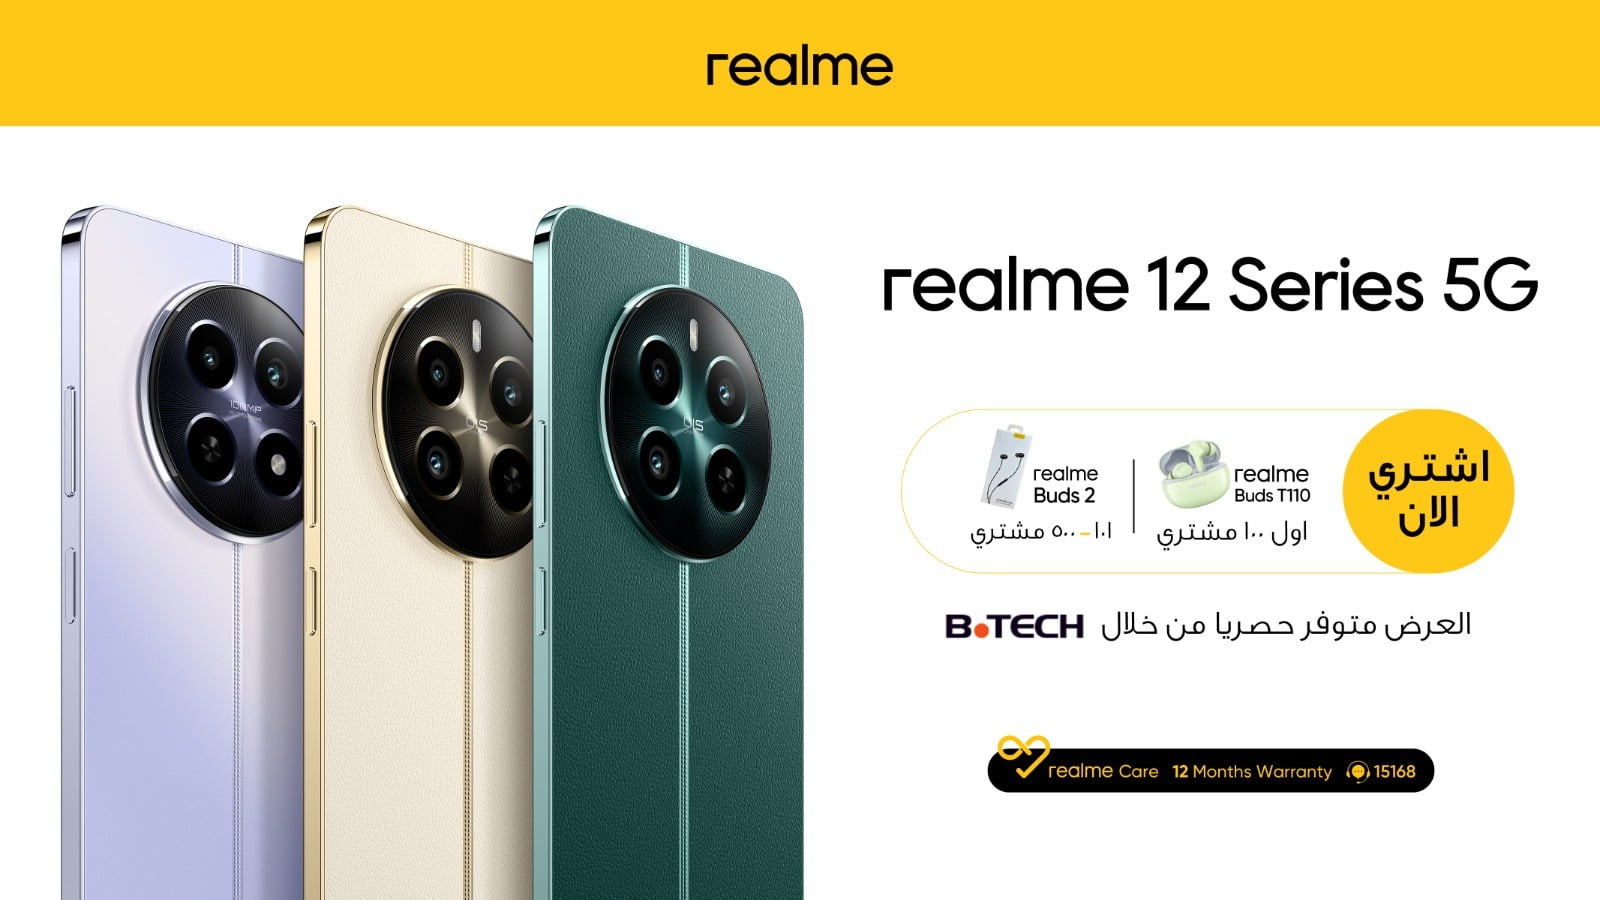 ريلمي تُقدم سلسلة Realme 12 5G الجديدة بدعم شبكات الجيل الخامس وبسعر تنافسي! -